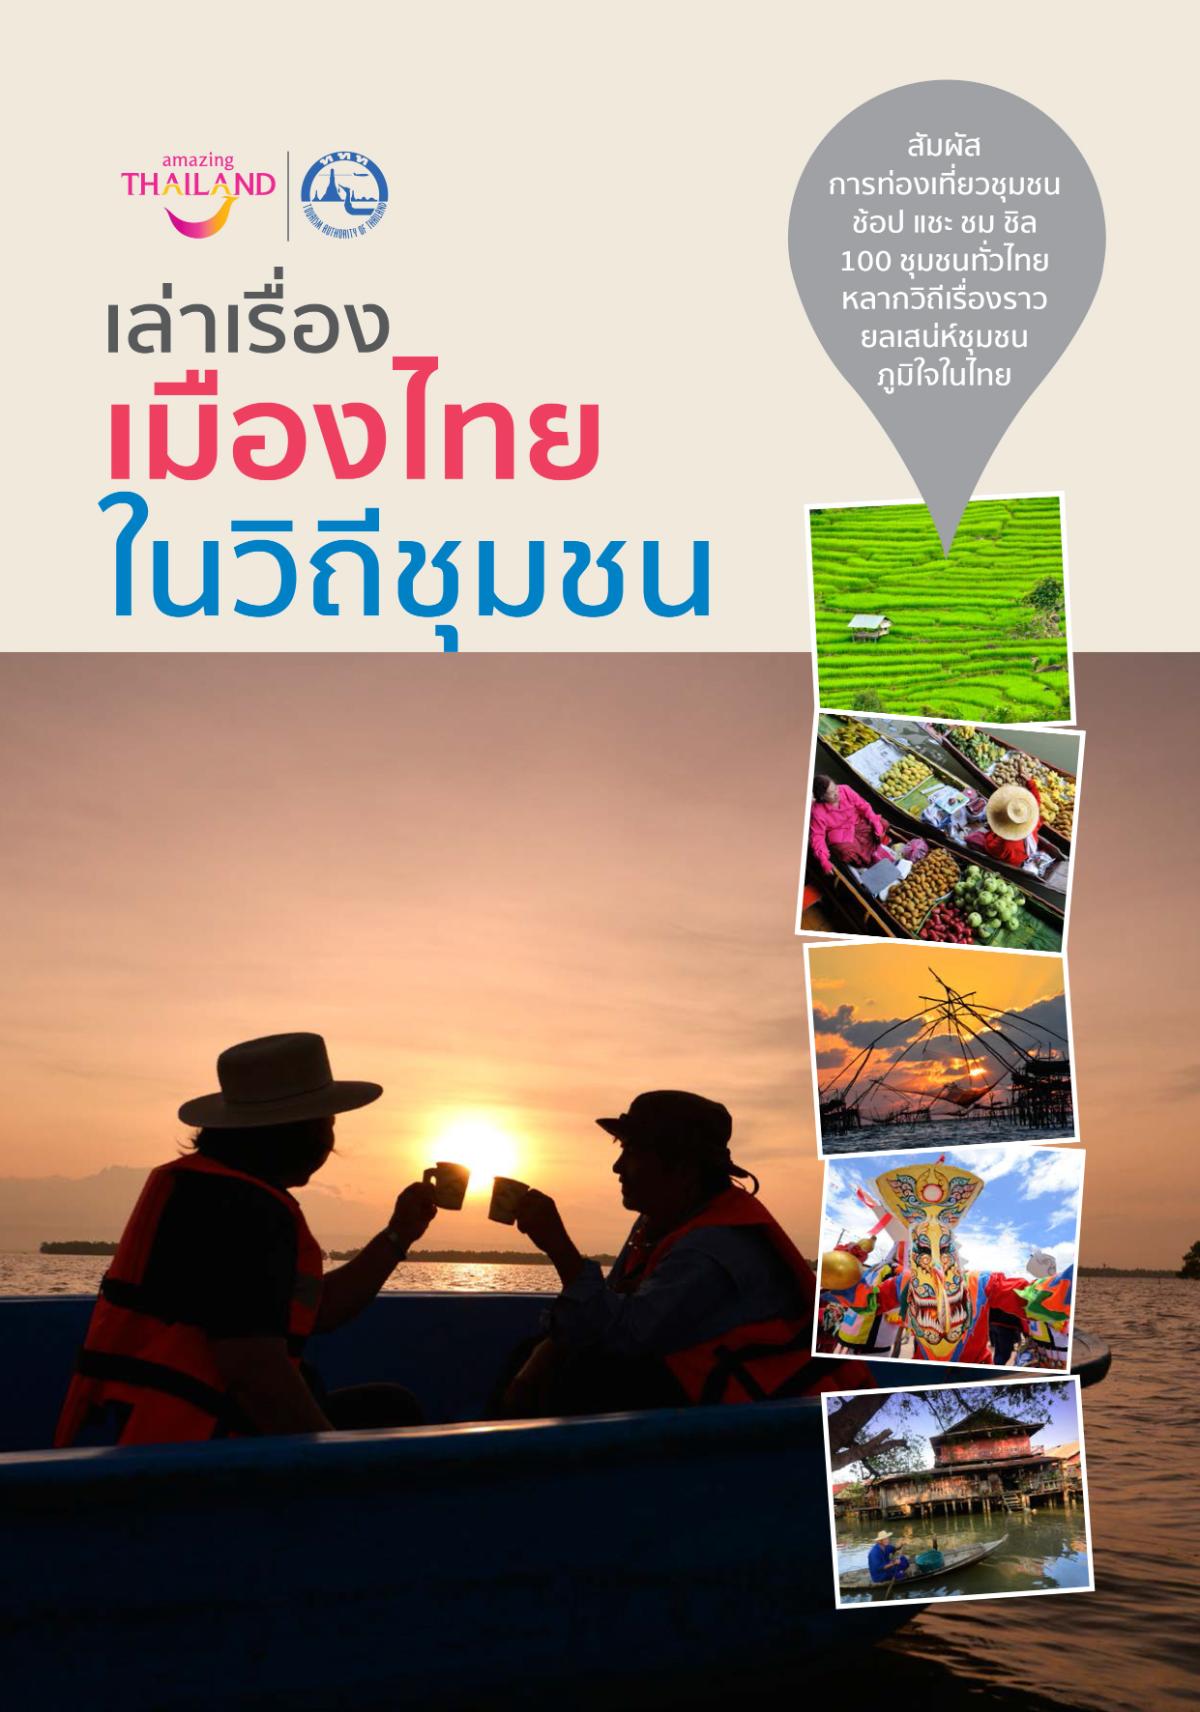 เปิดตัว E-Book “เล่าเรื่องเมืองไทย ในวิถีชุมชน” ต้อนรับการเปิดประเทศ